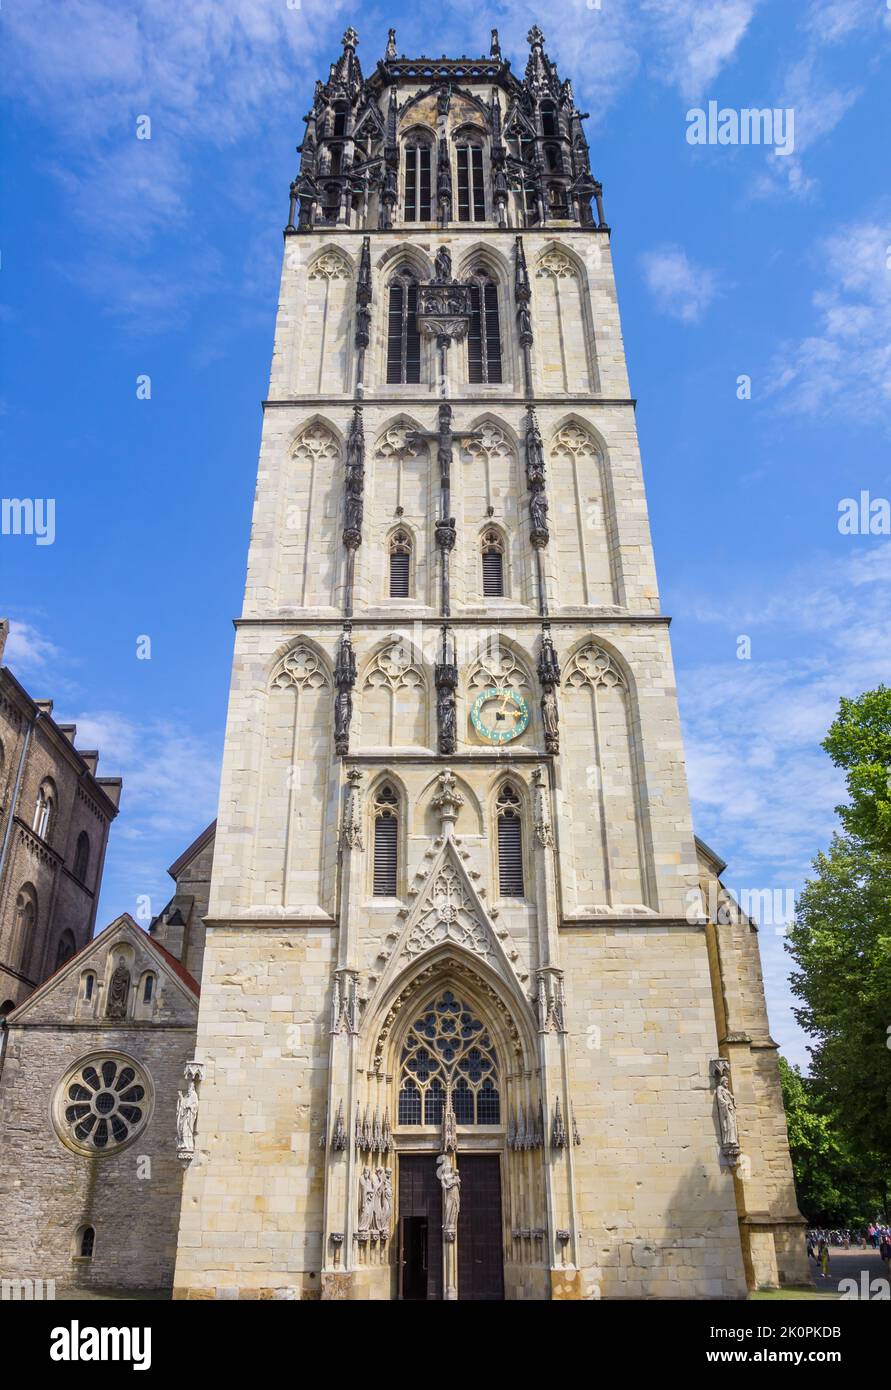 Façade de l'église Liebfrauenkirche à Munster, Allemagne Banque D'Images